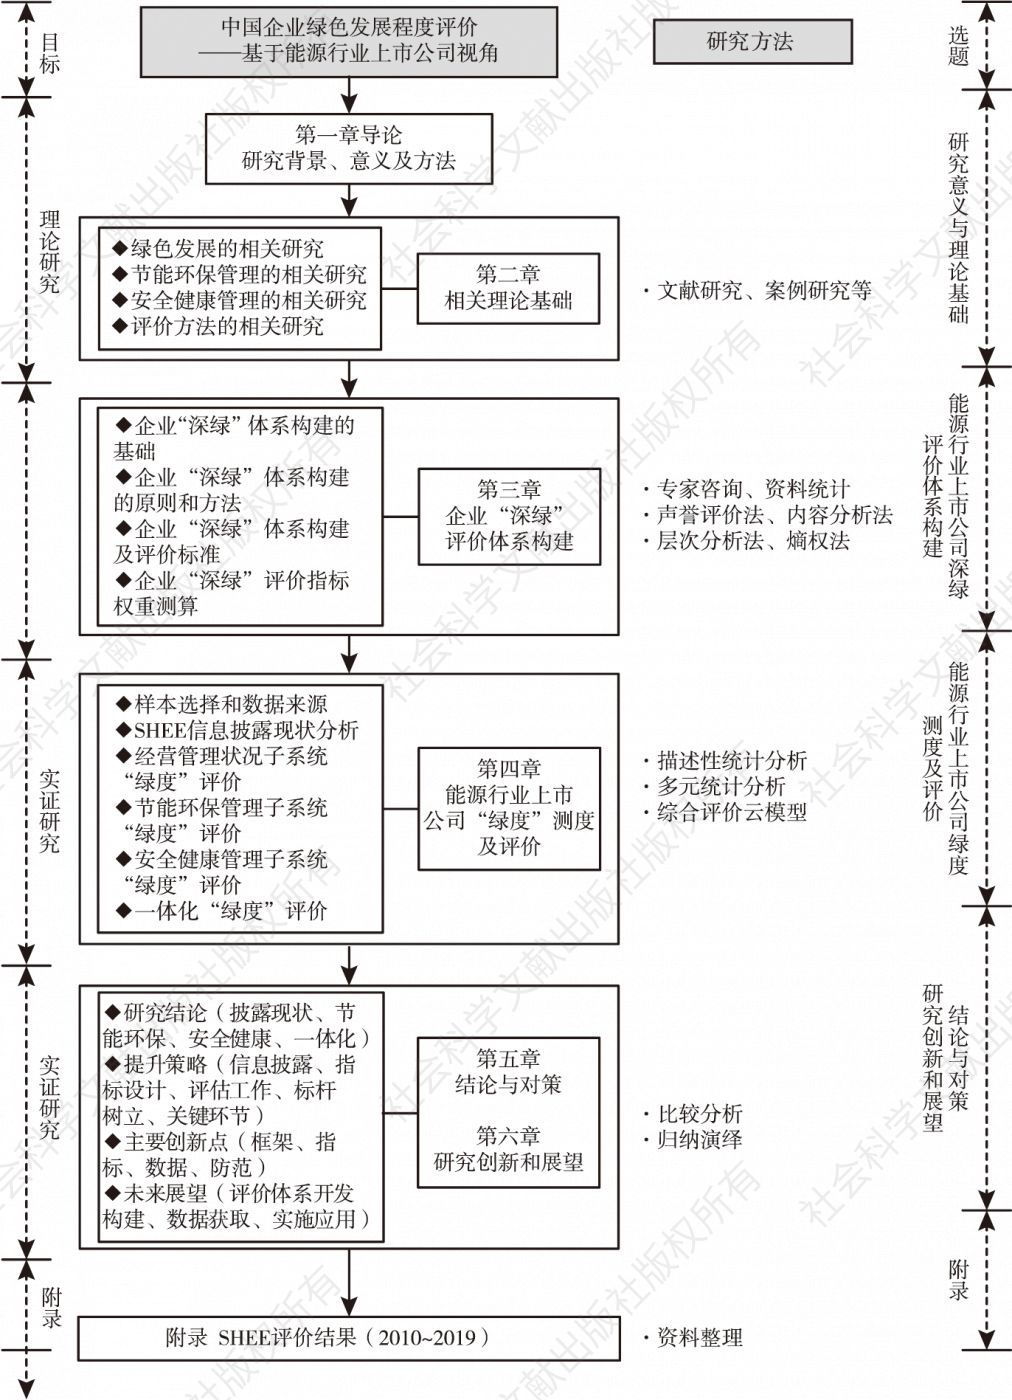 图1-5 研究框架